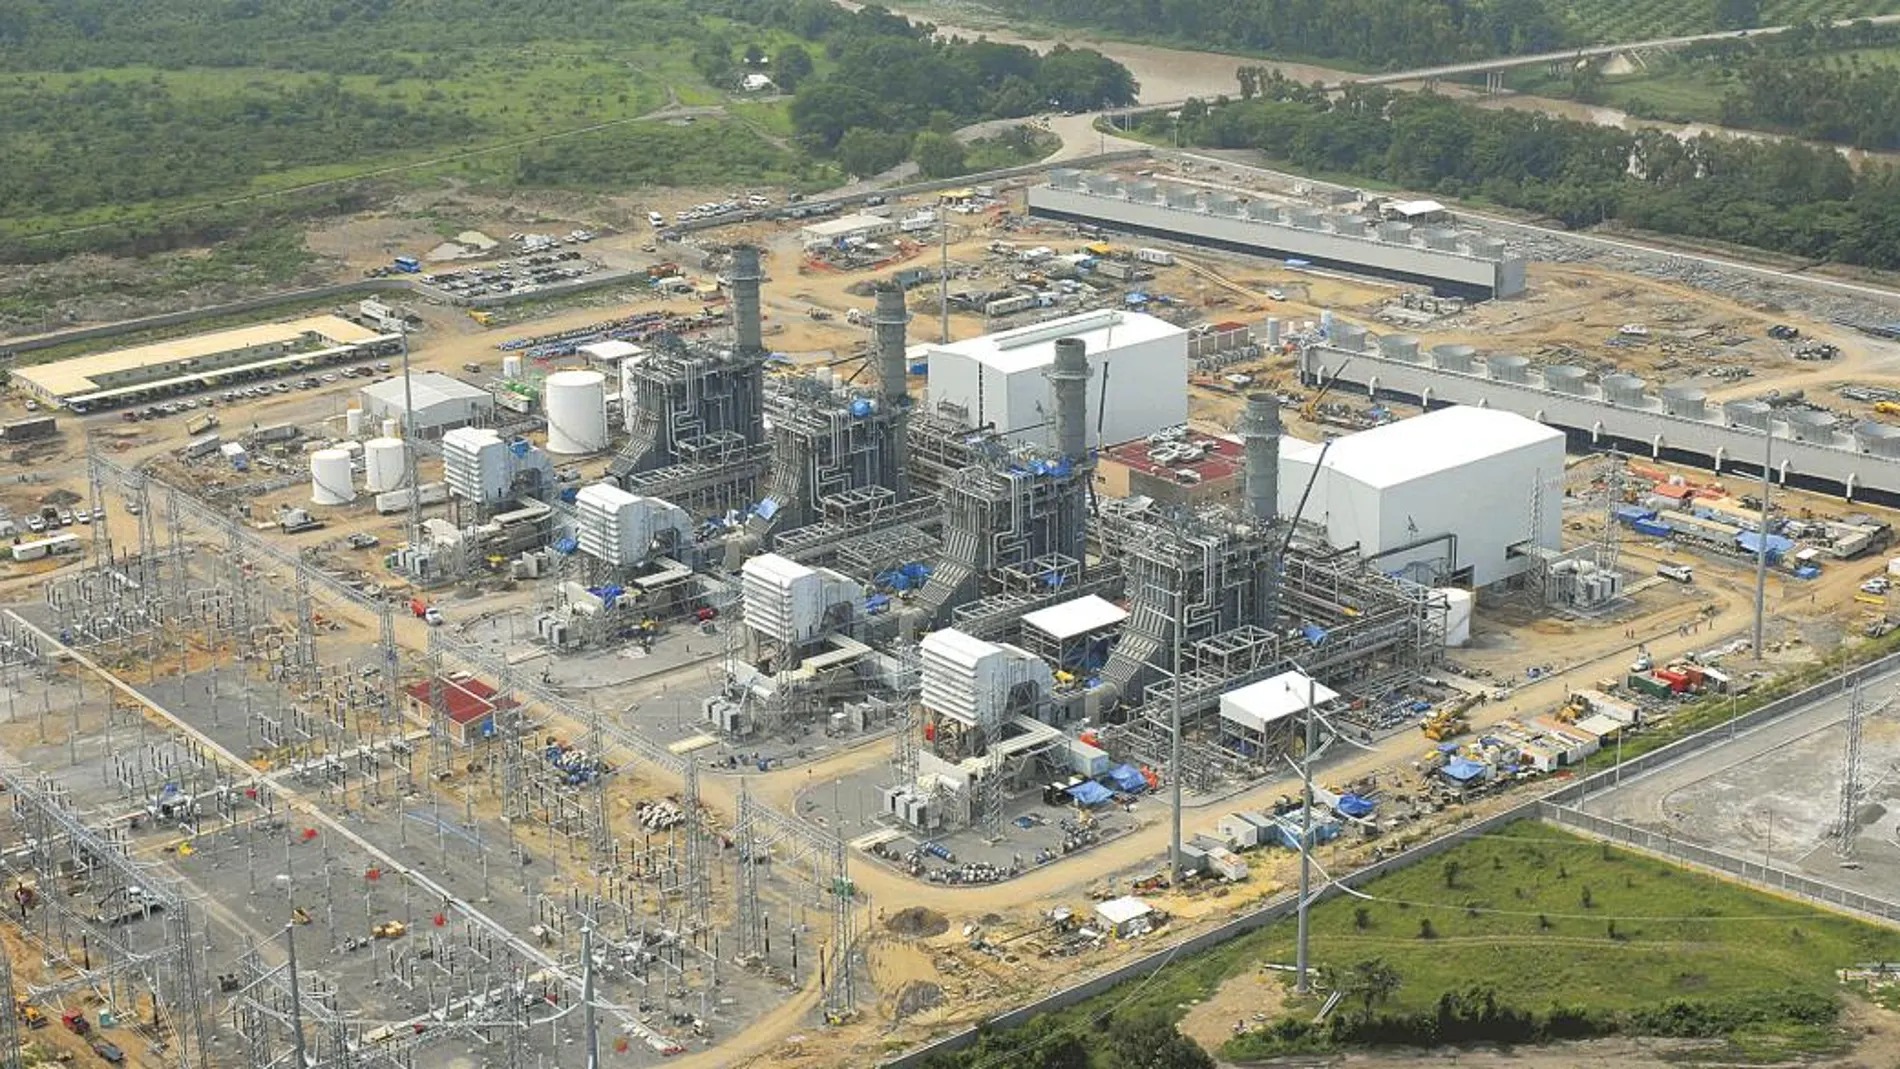 La central de ciclo combianado de Iberdrola de Tamazunchale, en el estado de San Luis de Potosí, es considerada la planta generadora de energía más grande de América Latina./ Dreamstime